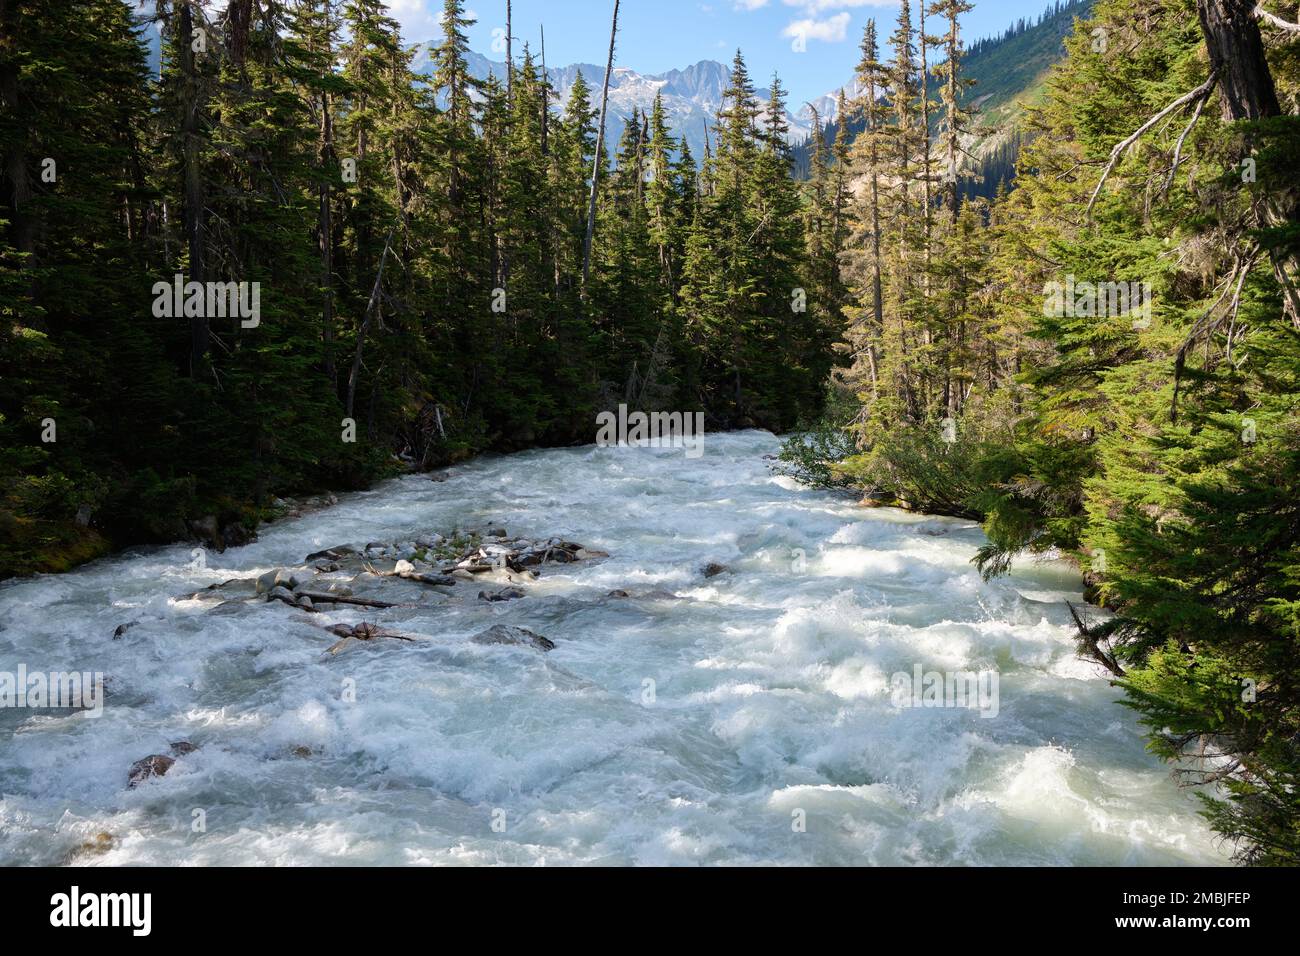 La fonte des neiges de l'après-midi fait gonfler la rivière Illecillewaet et se précipiter dans la forêt de conifères dans les montagnes du parc national Glacier, C.-B., Canada Banque D'Images